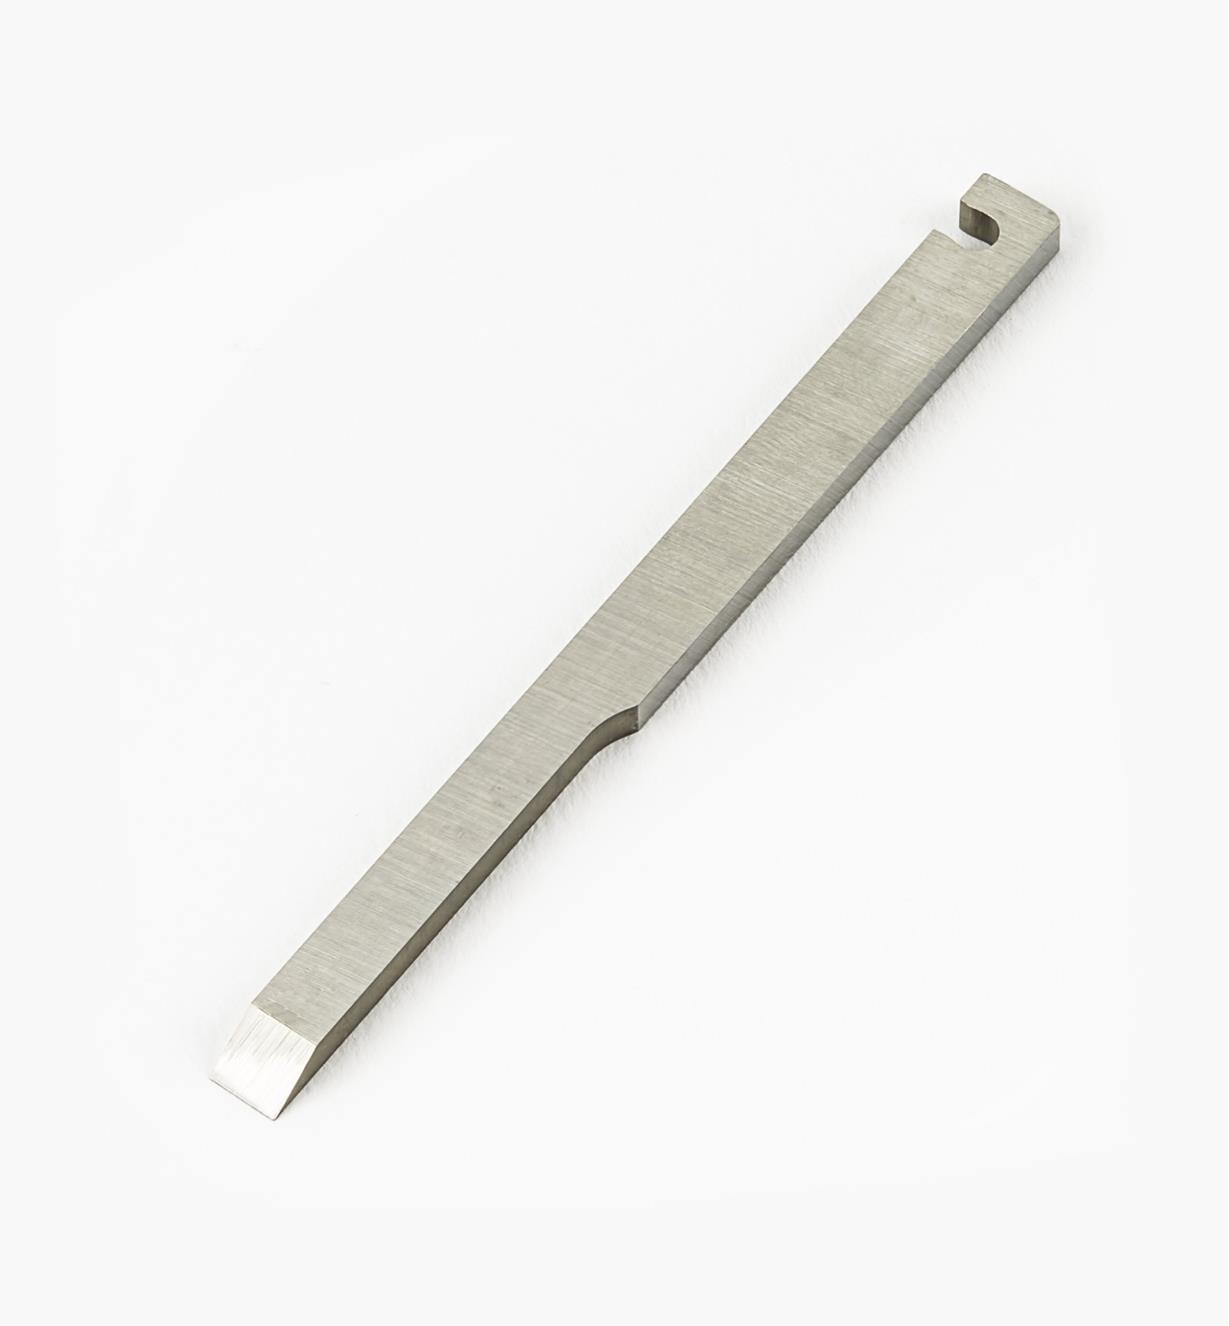 05P5235 - 5mm Standard LH Blade